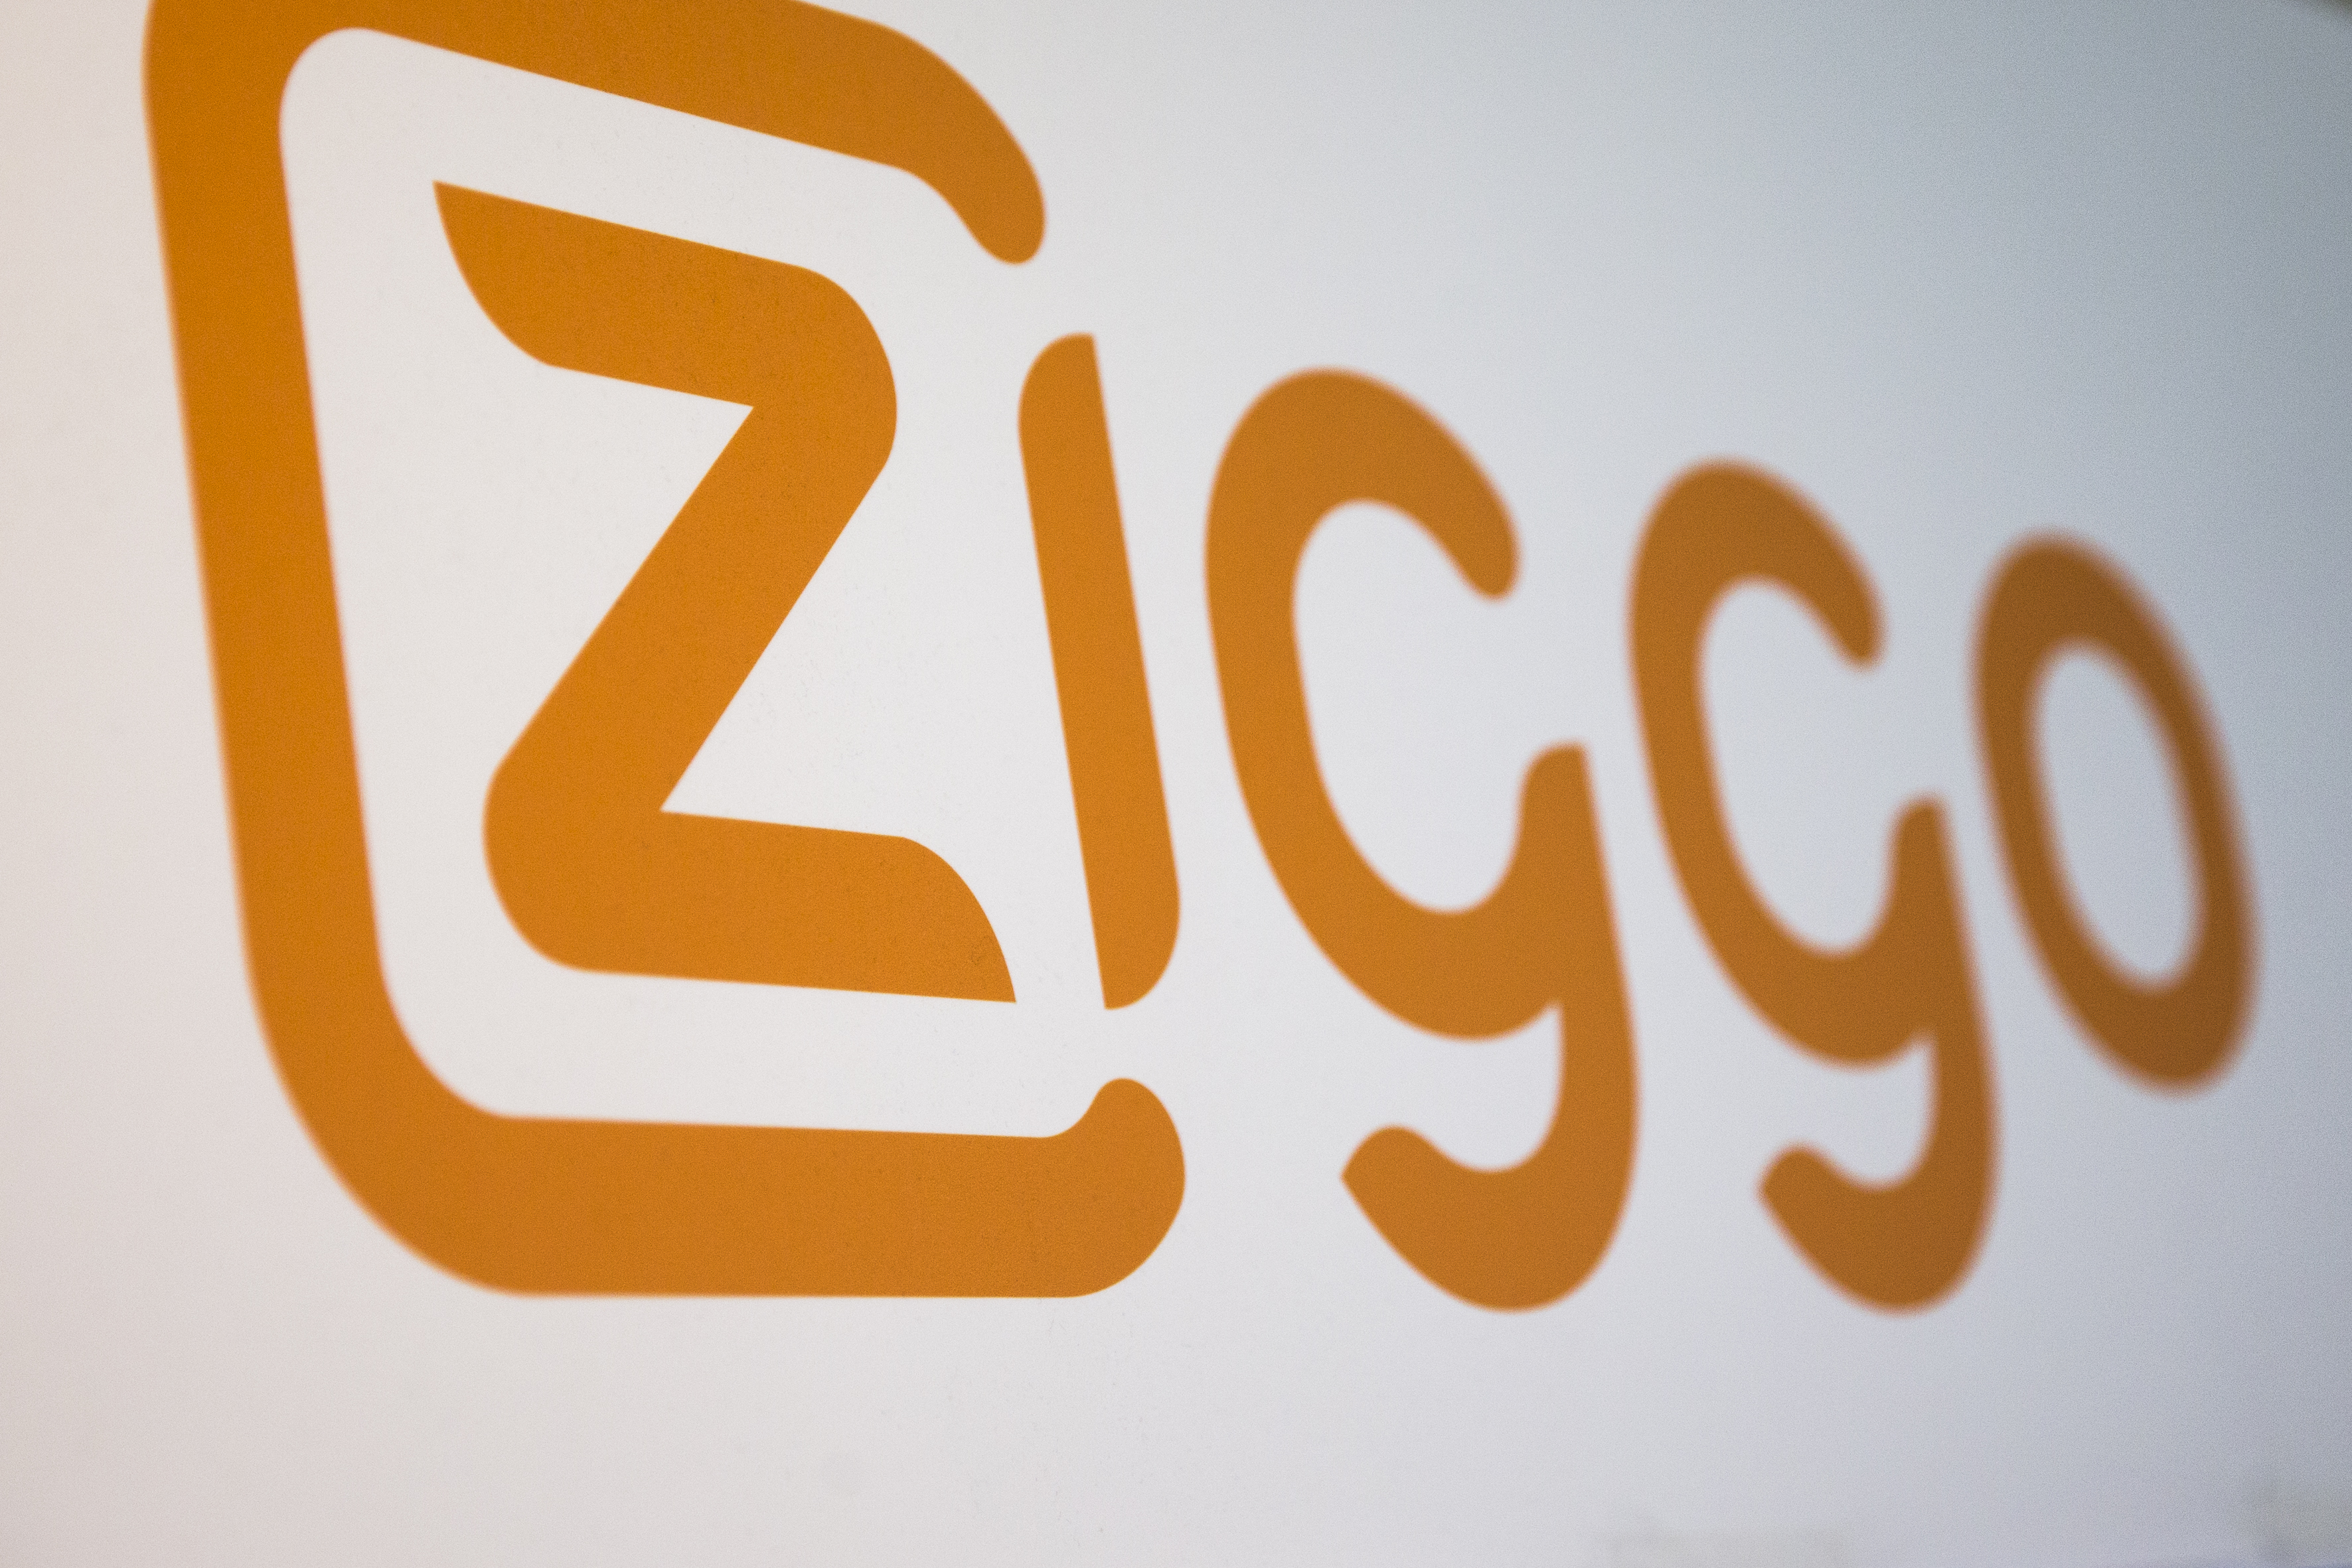 Ziggo Dutch Film Works